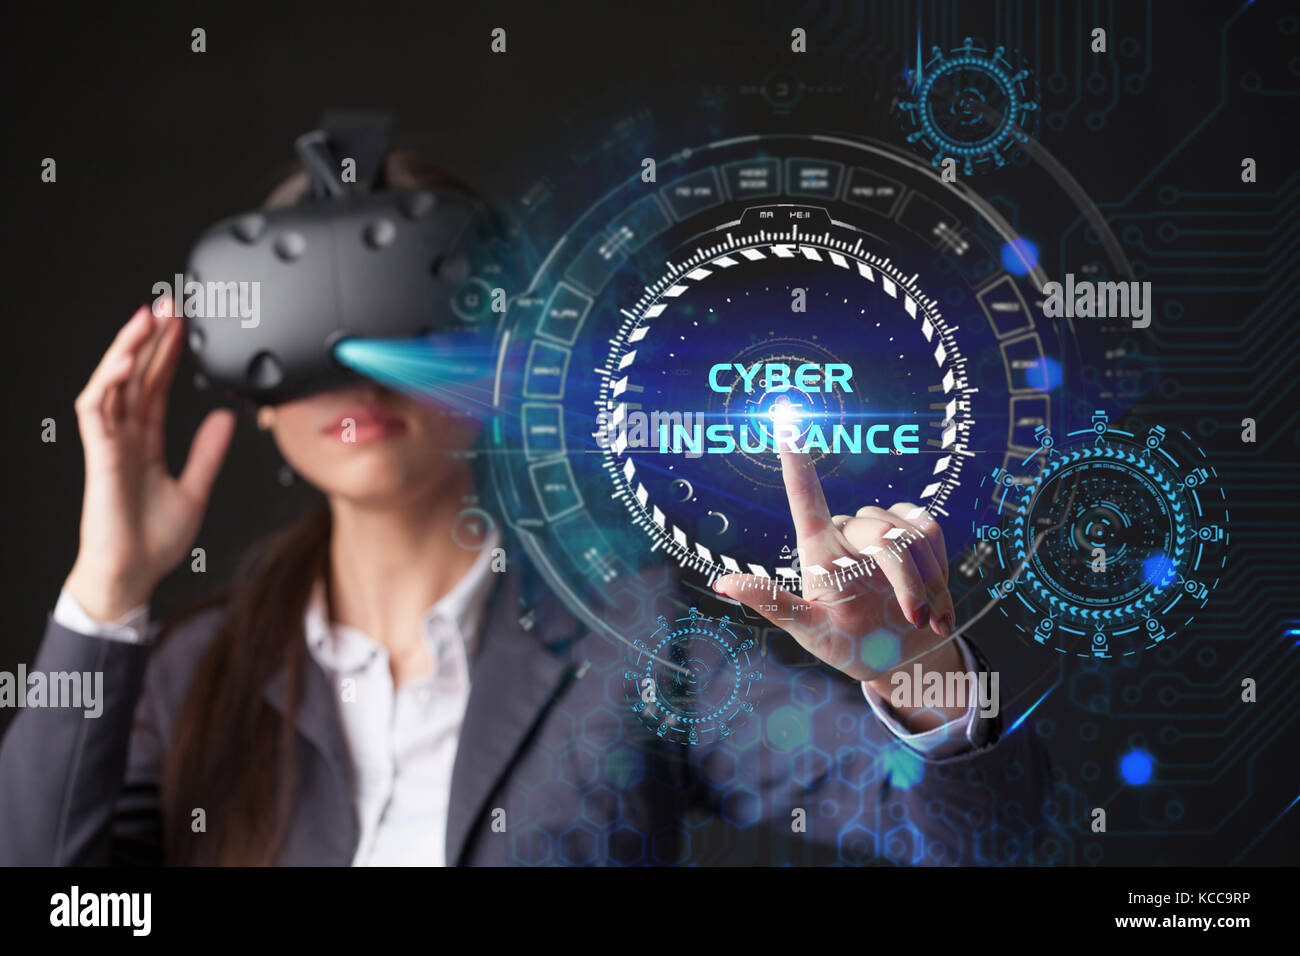 Young businesswoman working in lunettes virtuelle, sélectionnez l'icône de l'assurance cybernétique de l'écran virtuel Banque D'Images